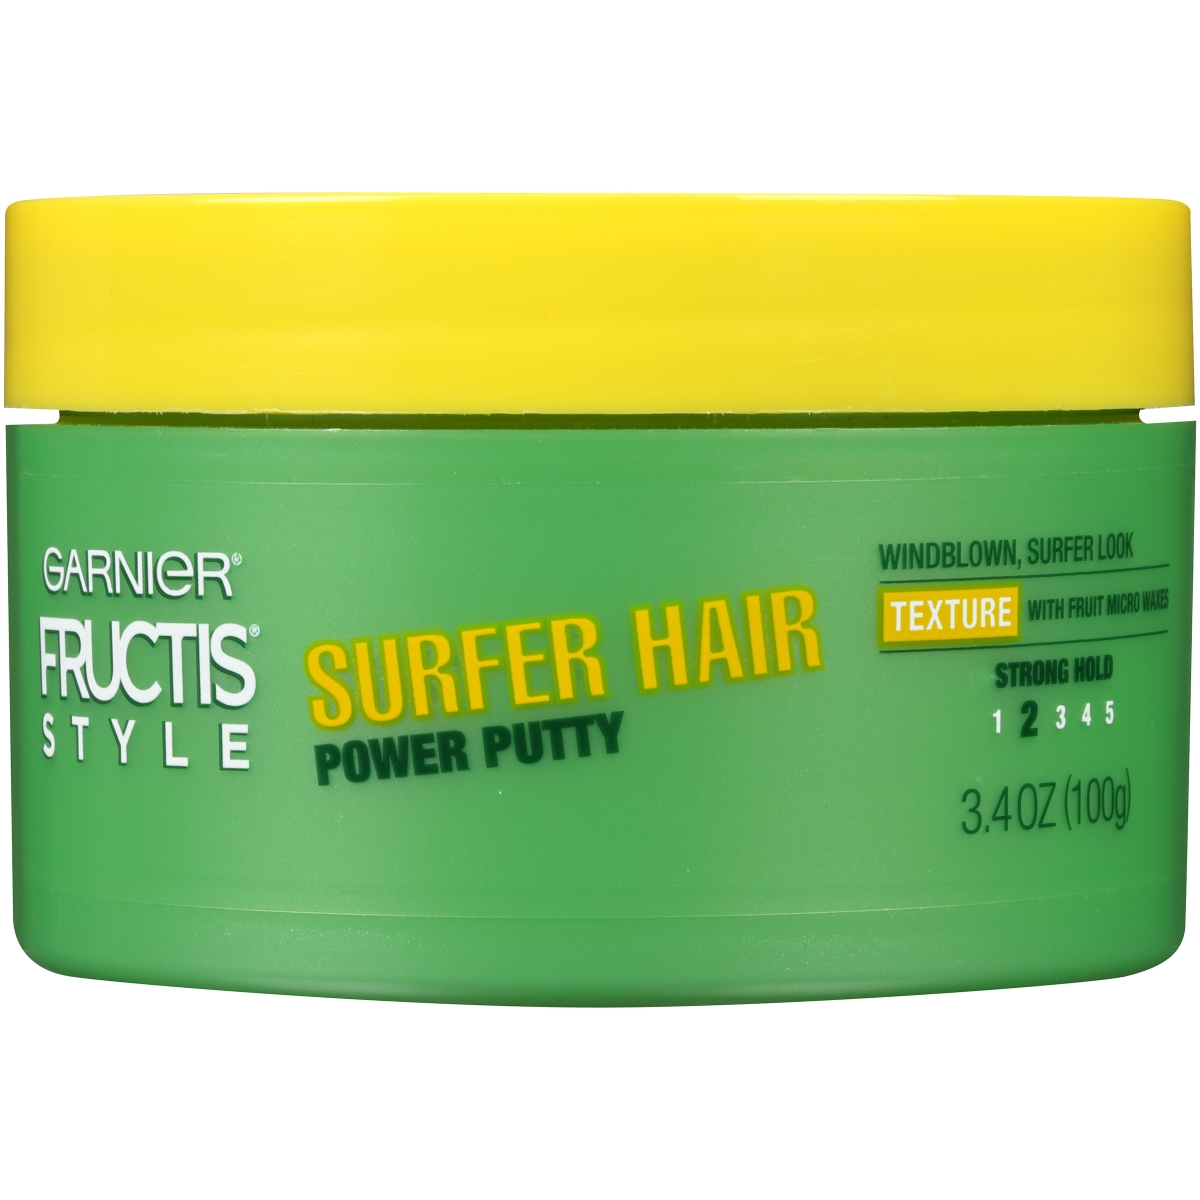 1097873 3.4 Oz Power Putty Surfer Hair Power Putty